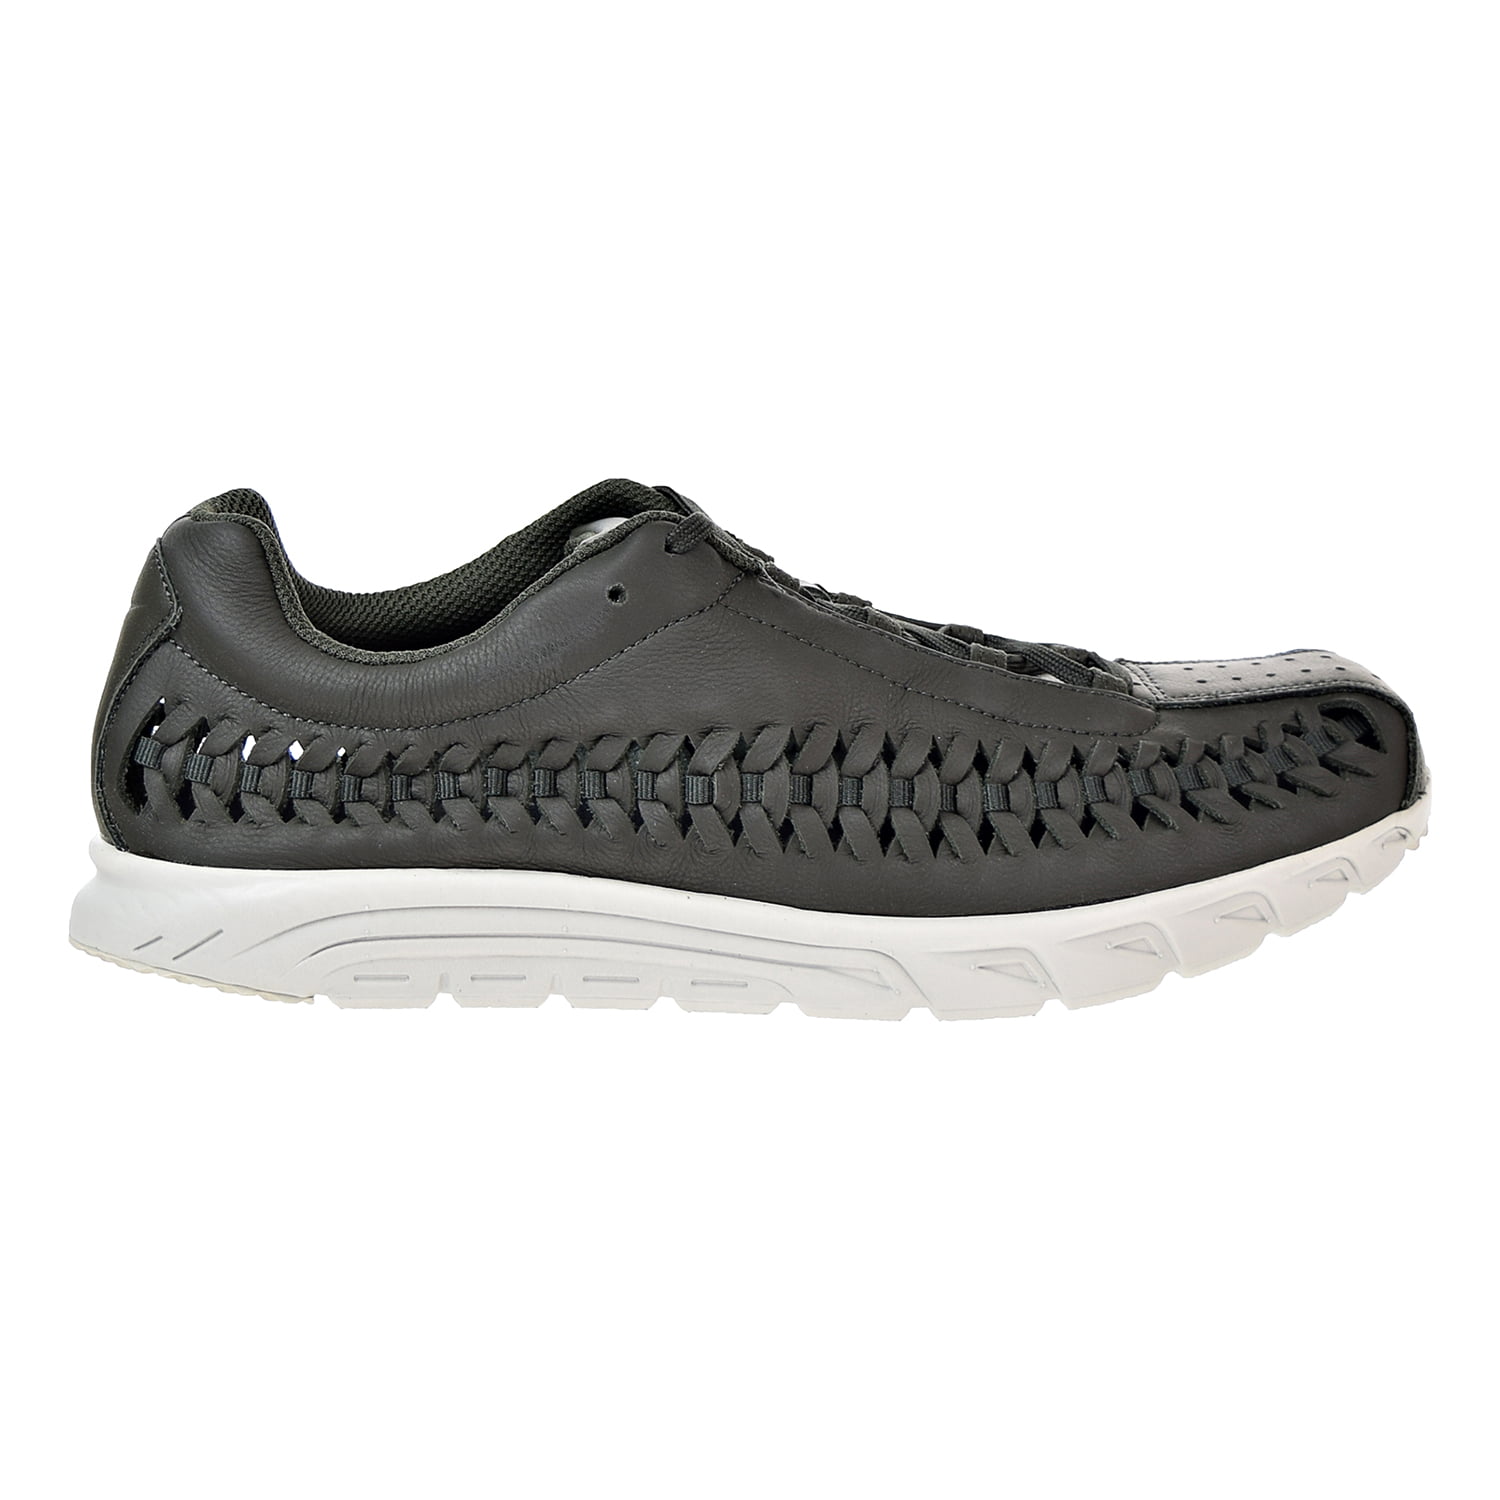 Nike Mayfly Woven Men's Shoes 833132-302 - Walmart.com